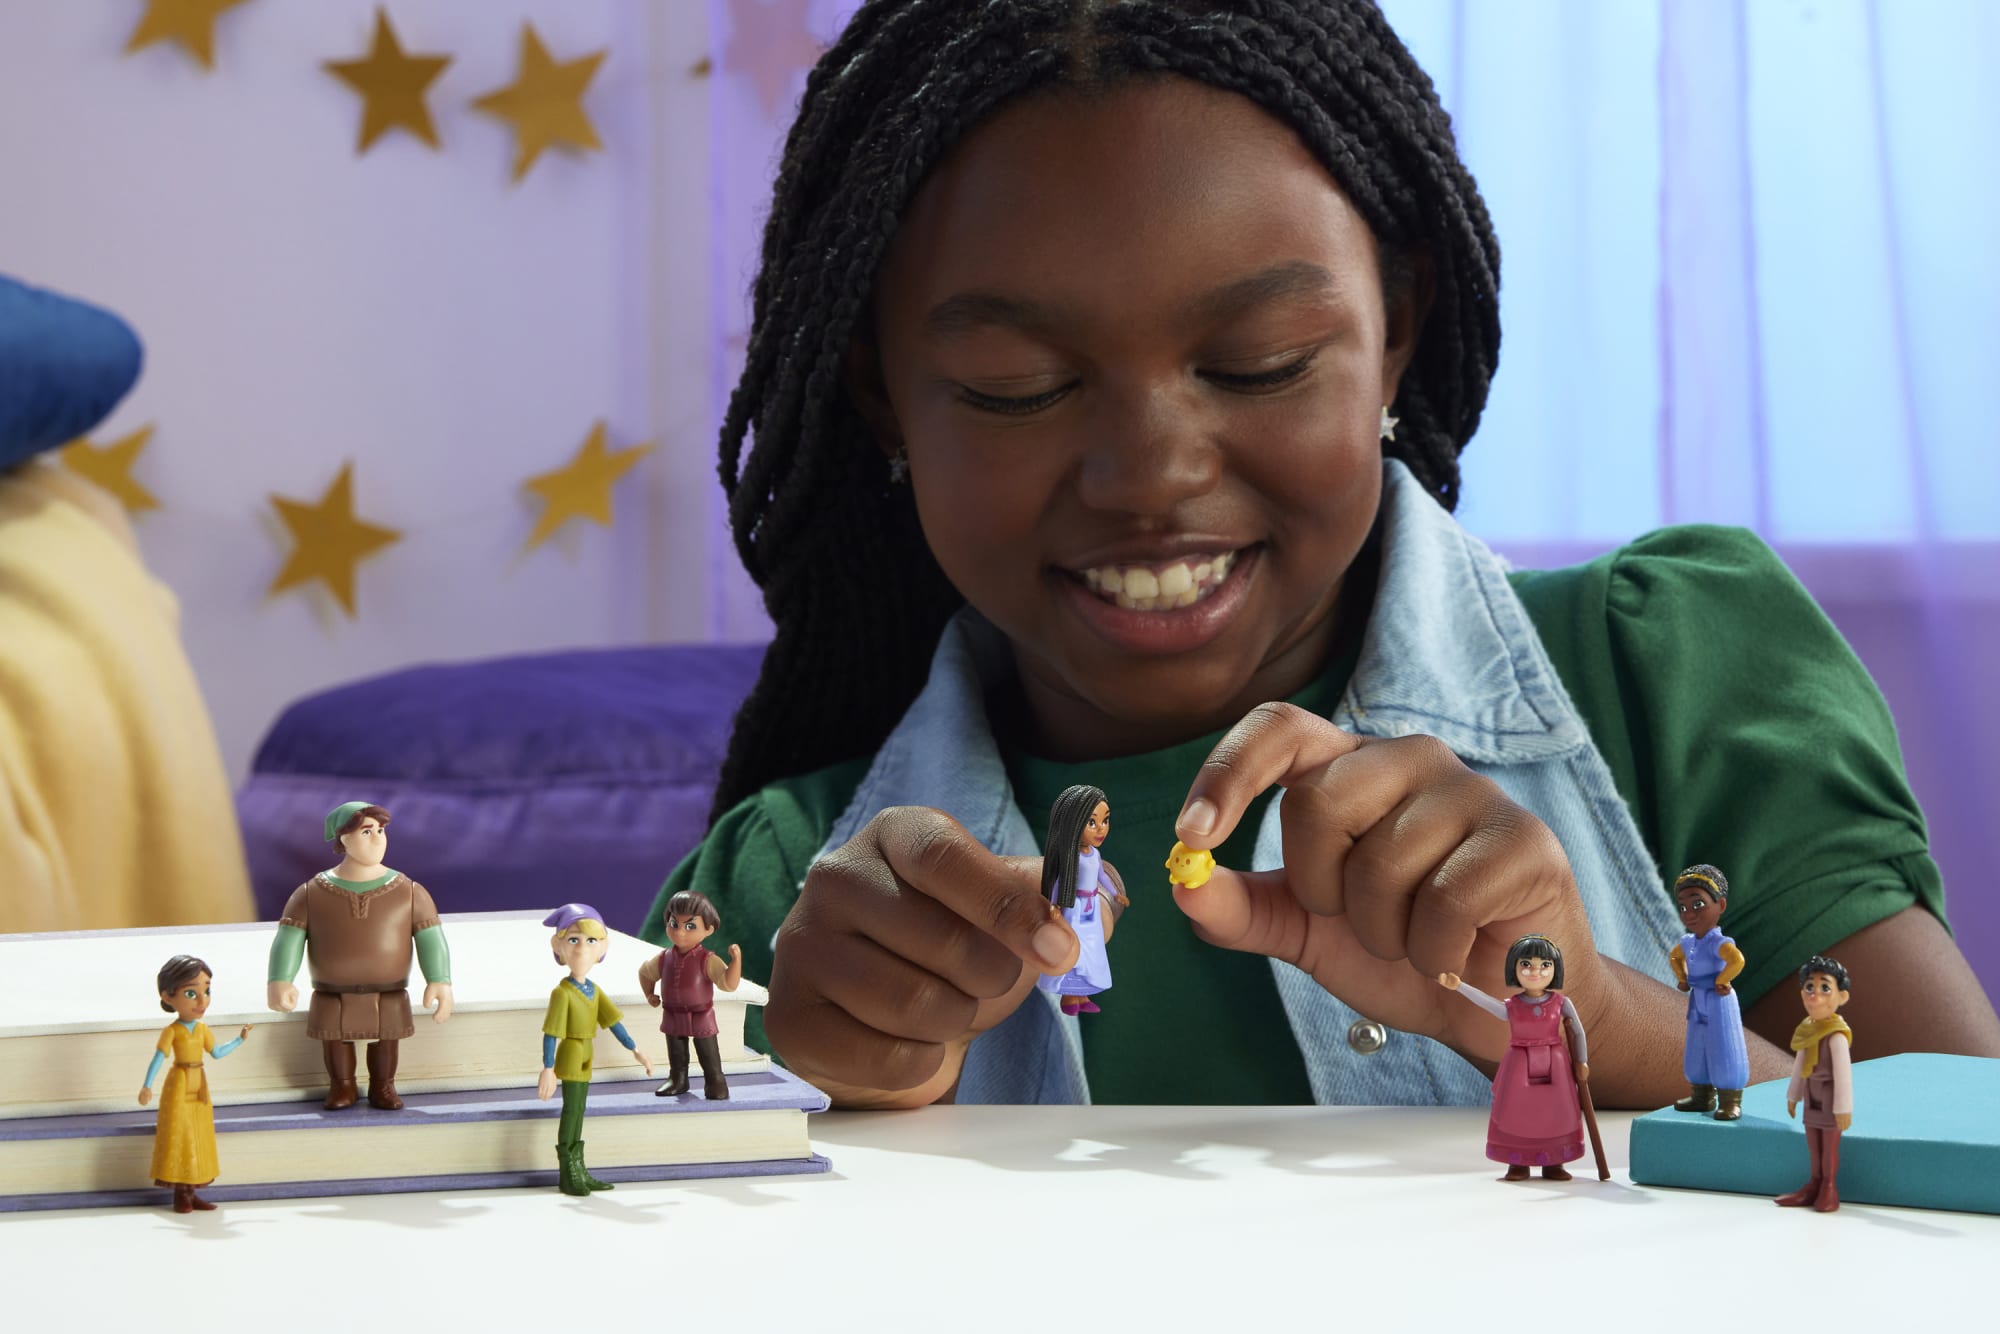 Disney Wish Mini Surprise HPX30 Mattel - 1 Pièce Aléatoire